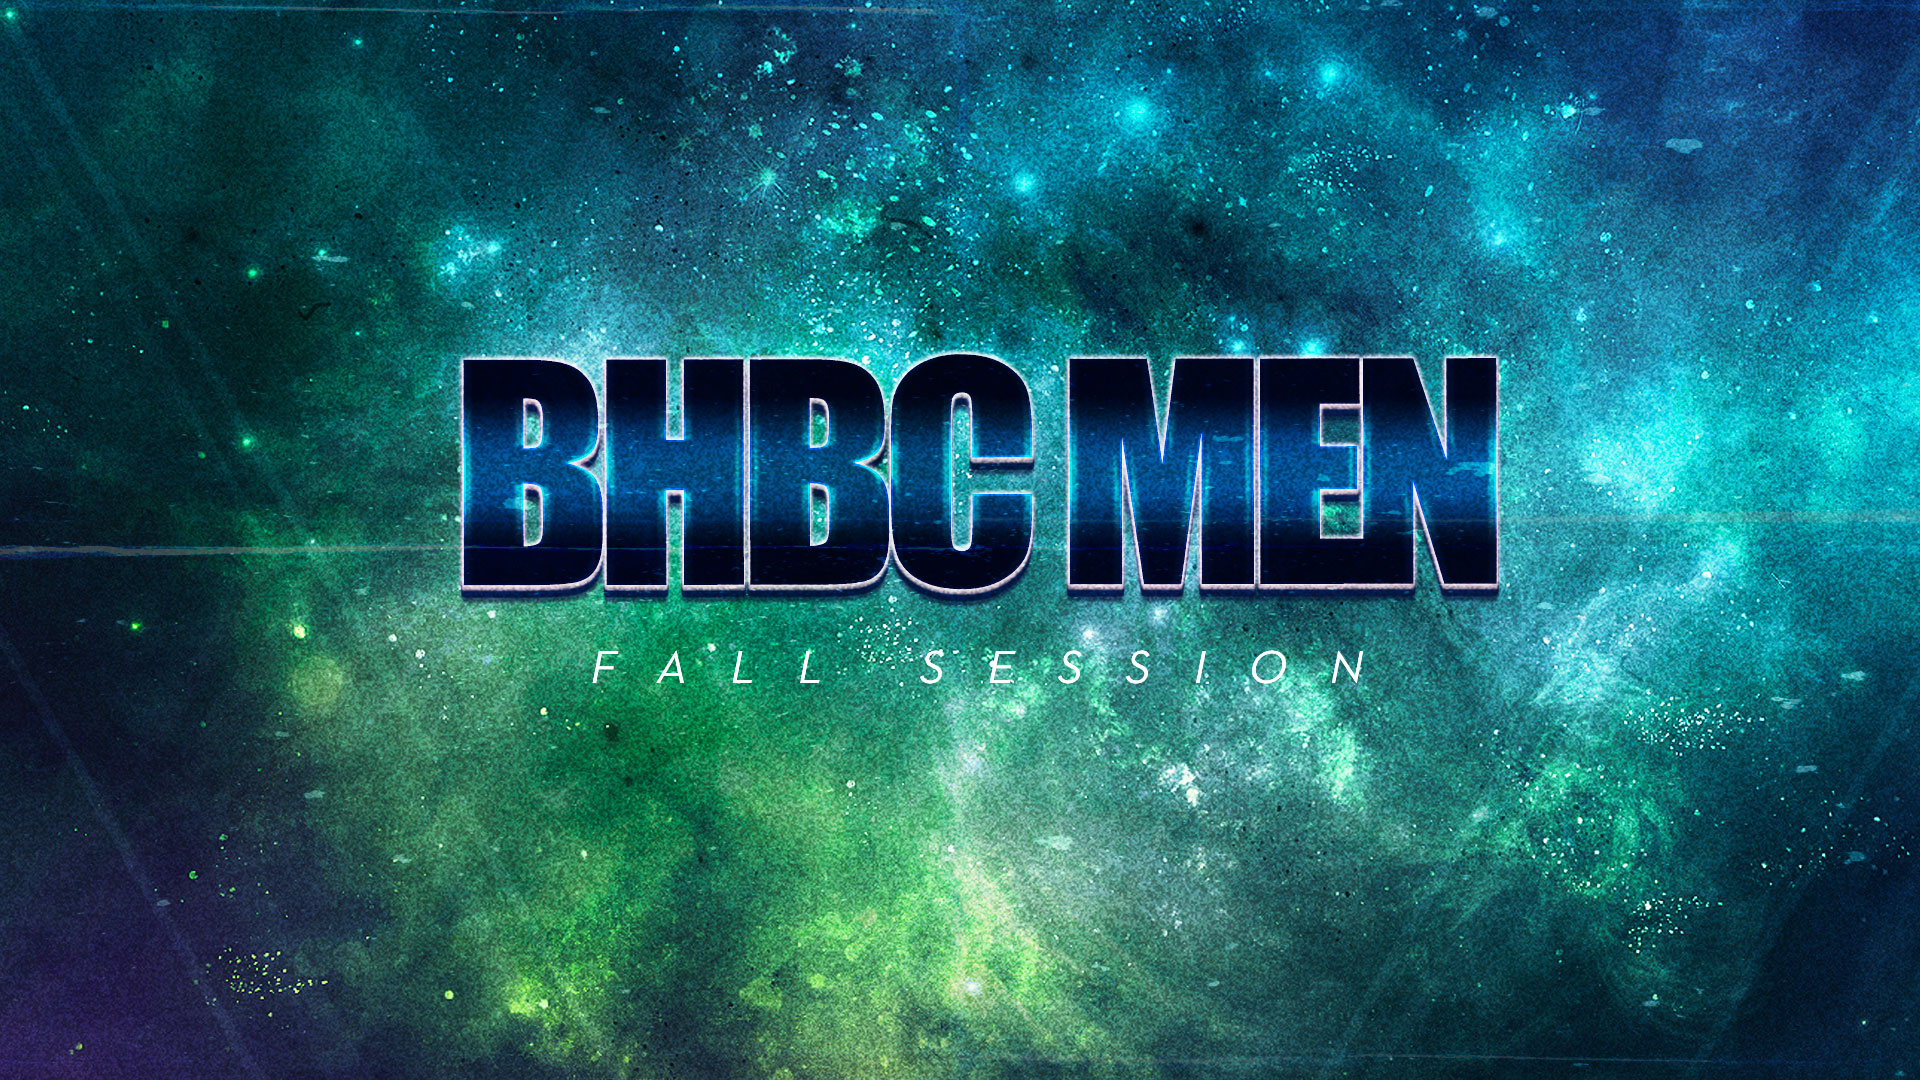 2020 - BHBC Men Winter: Rockford Campus